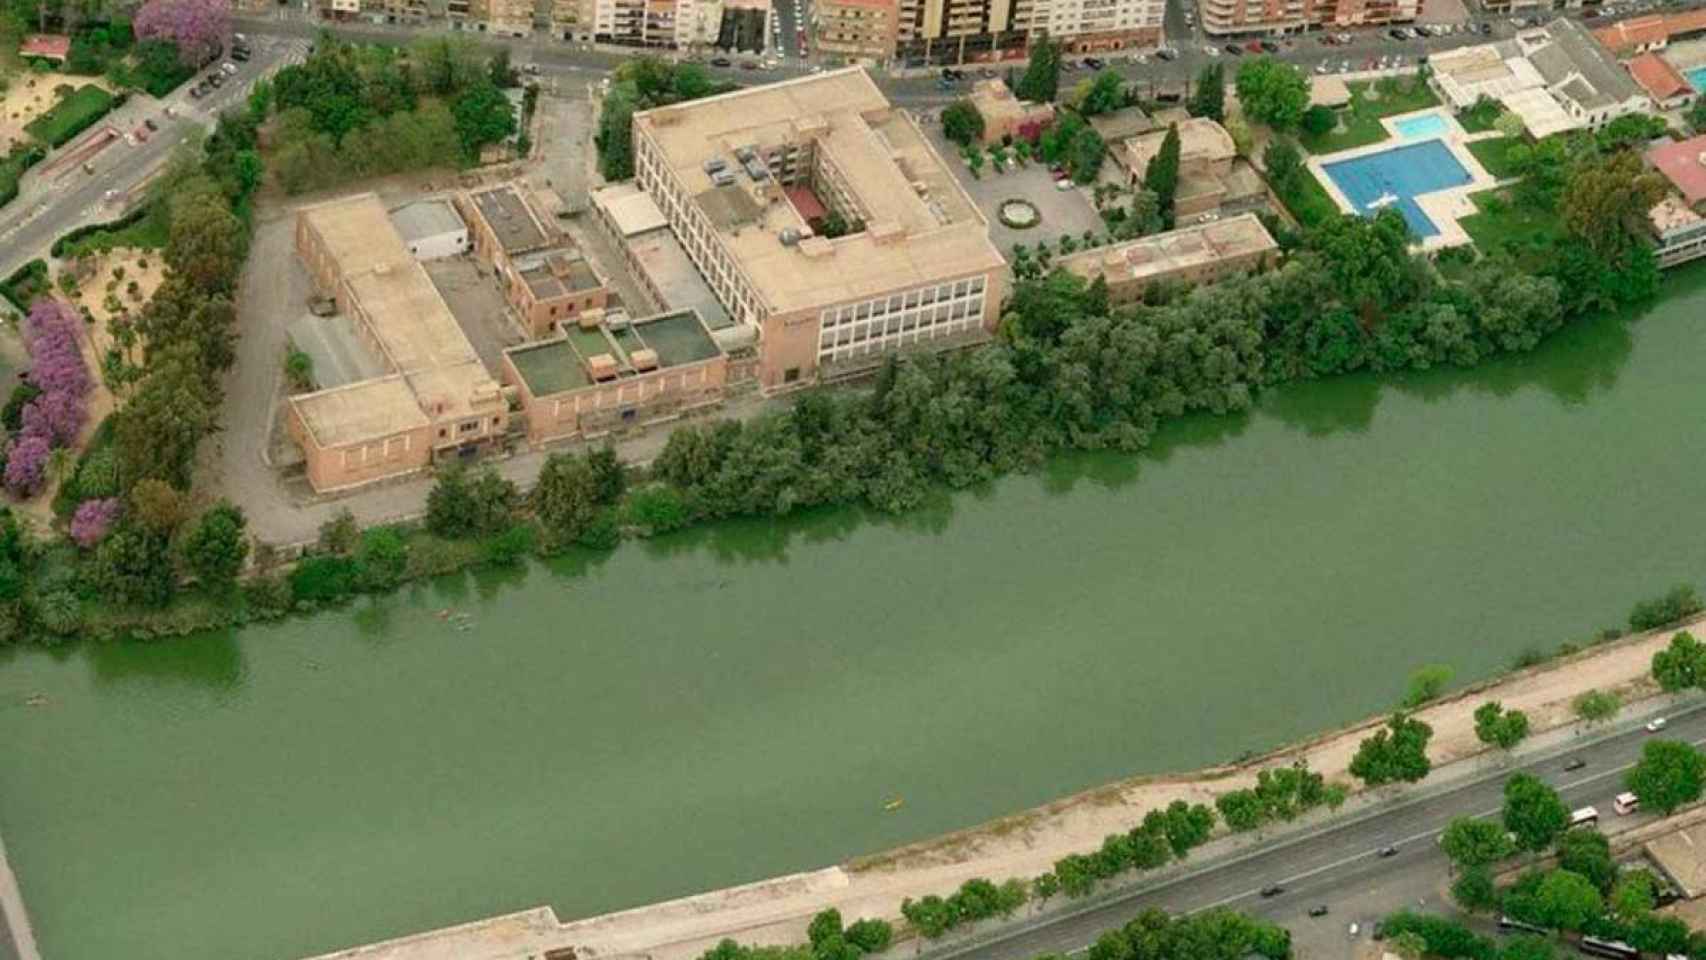 Vista aérea de la Antigua Fábrica de Tabacos de Altadis en Sevilla.